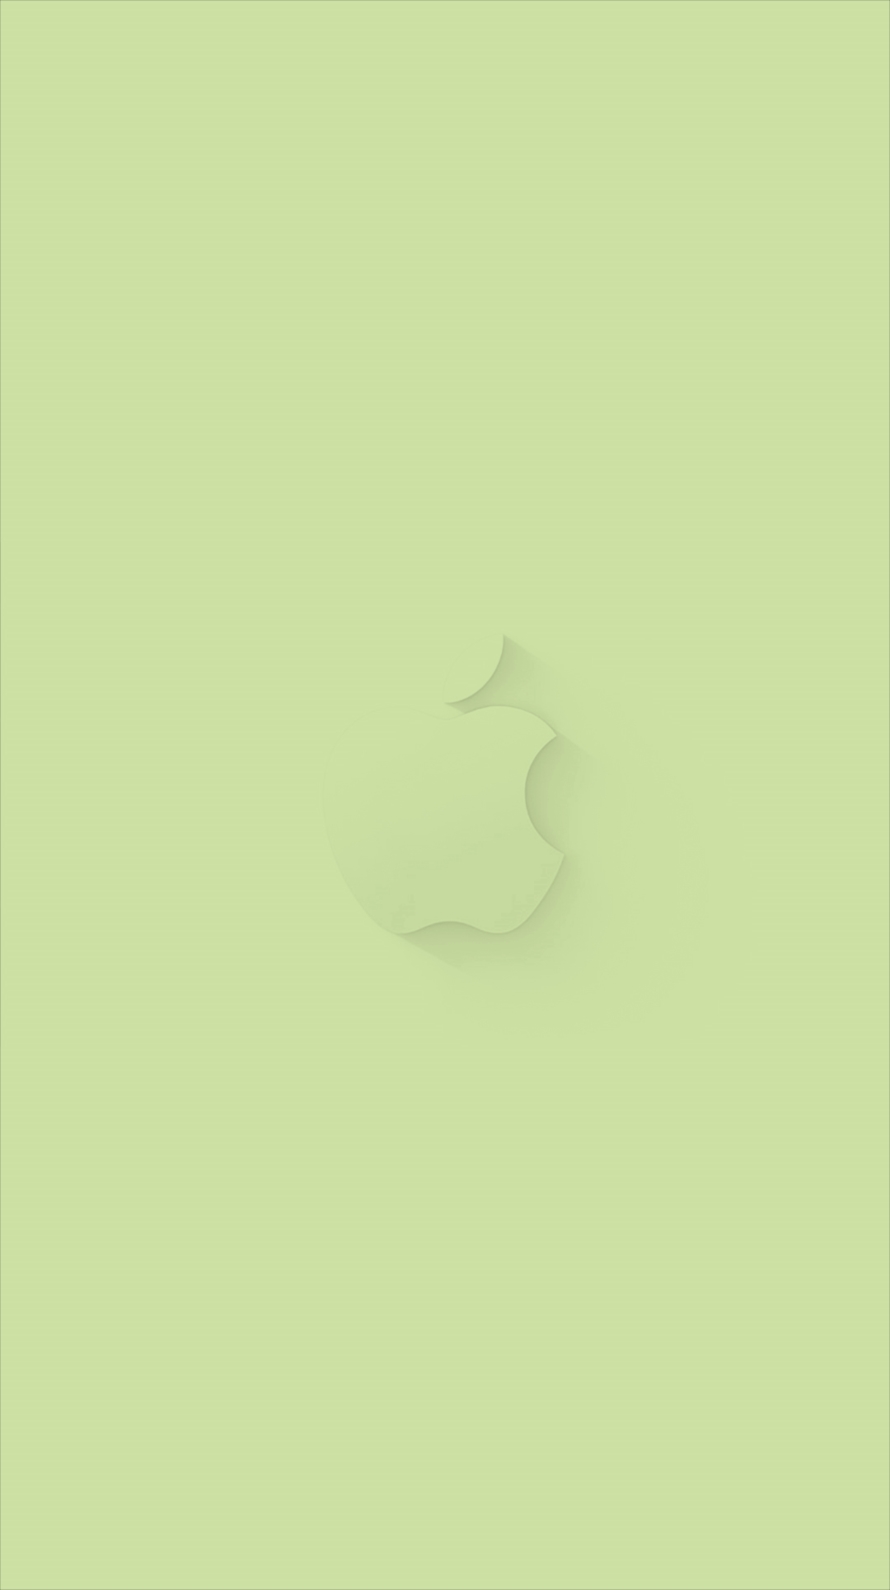 ミントグリーン アップルロゴ Iphone6壁紙 Wallpaperbox